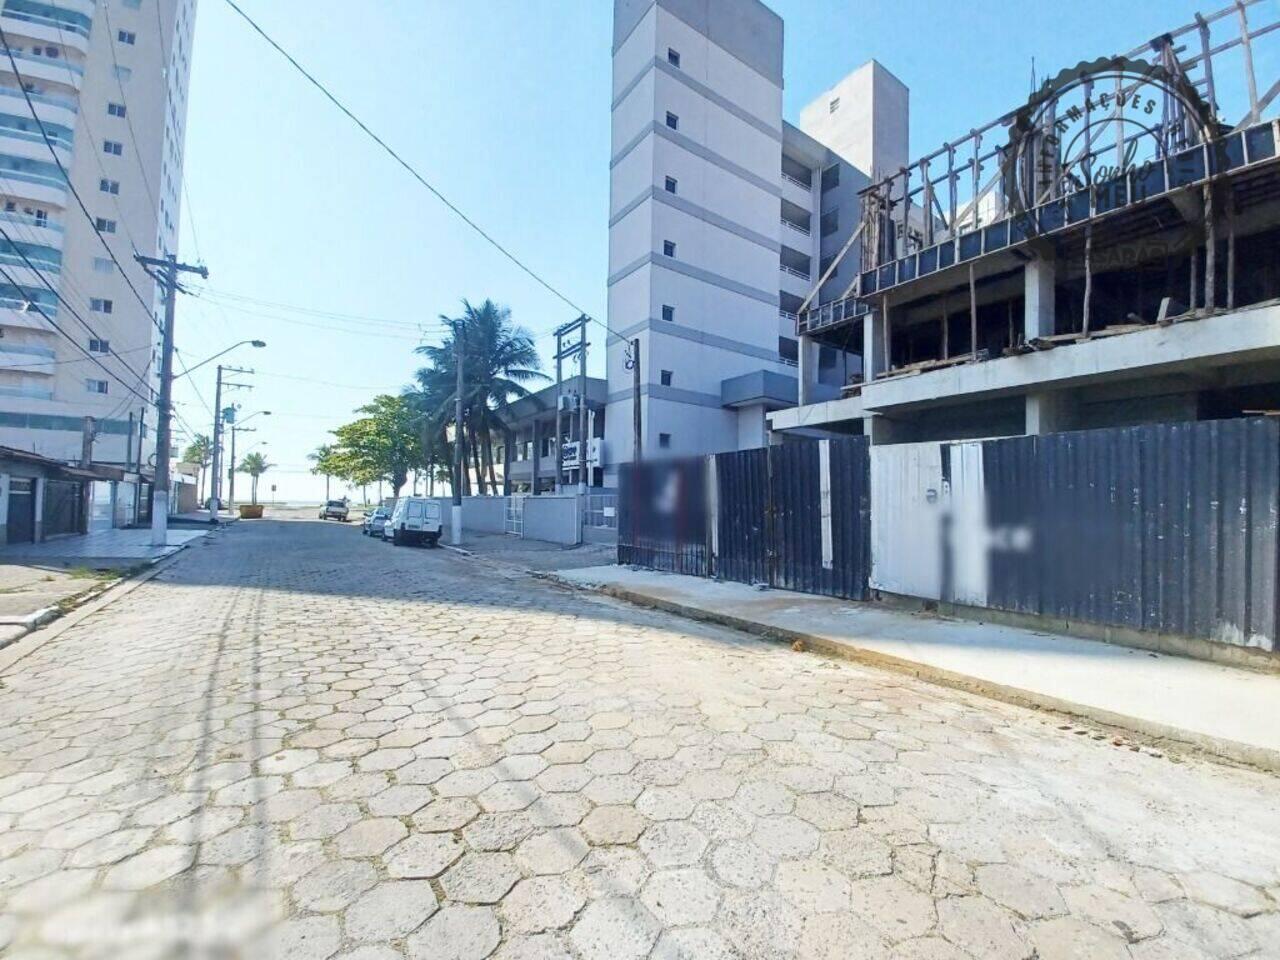 Apartamento Maracanã, Praia Grande - SP